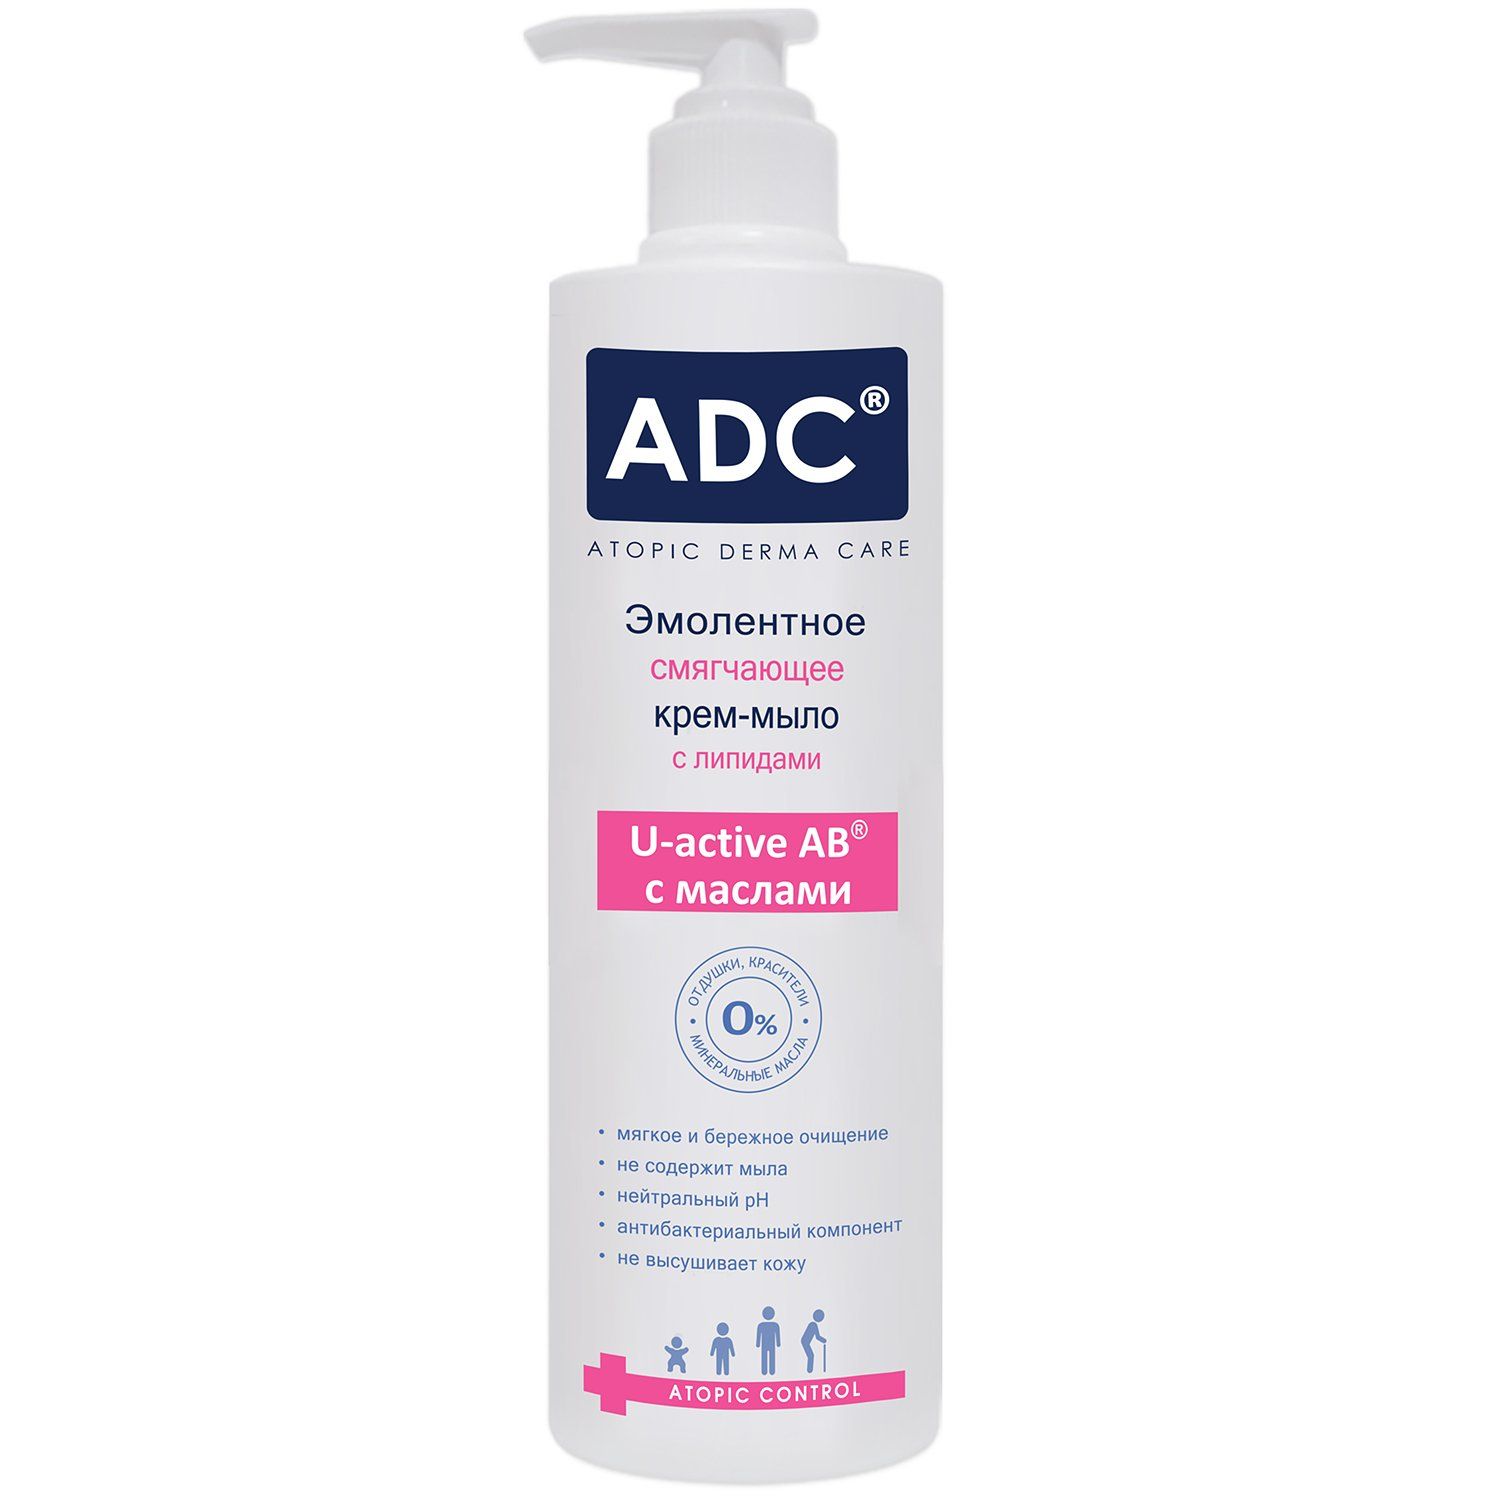 Atopic для купания. ADC крем-эмульсия питательная гидрорегулирующая для детей. ADC гель эмолентный atopic Control для купания и мытья волос. Гель для купания для атопичной кожи.